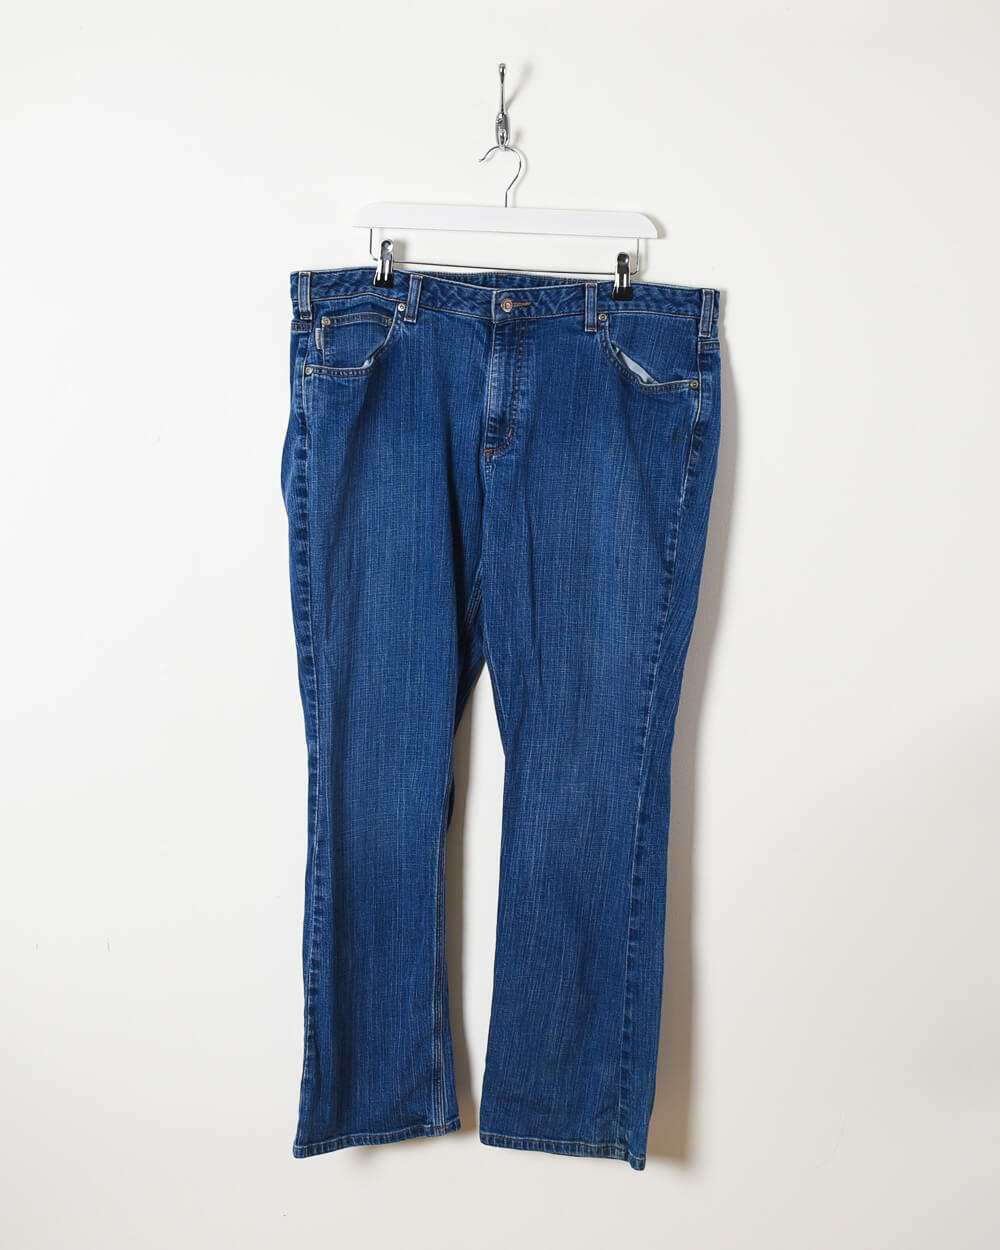 Blue Carhartt Jeans - W40 L32